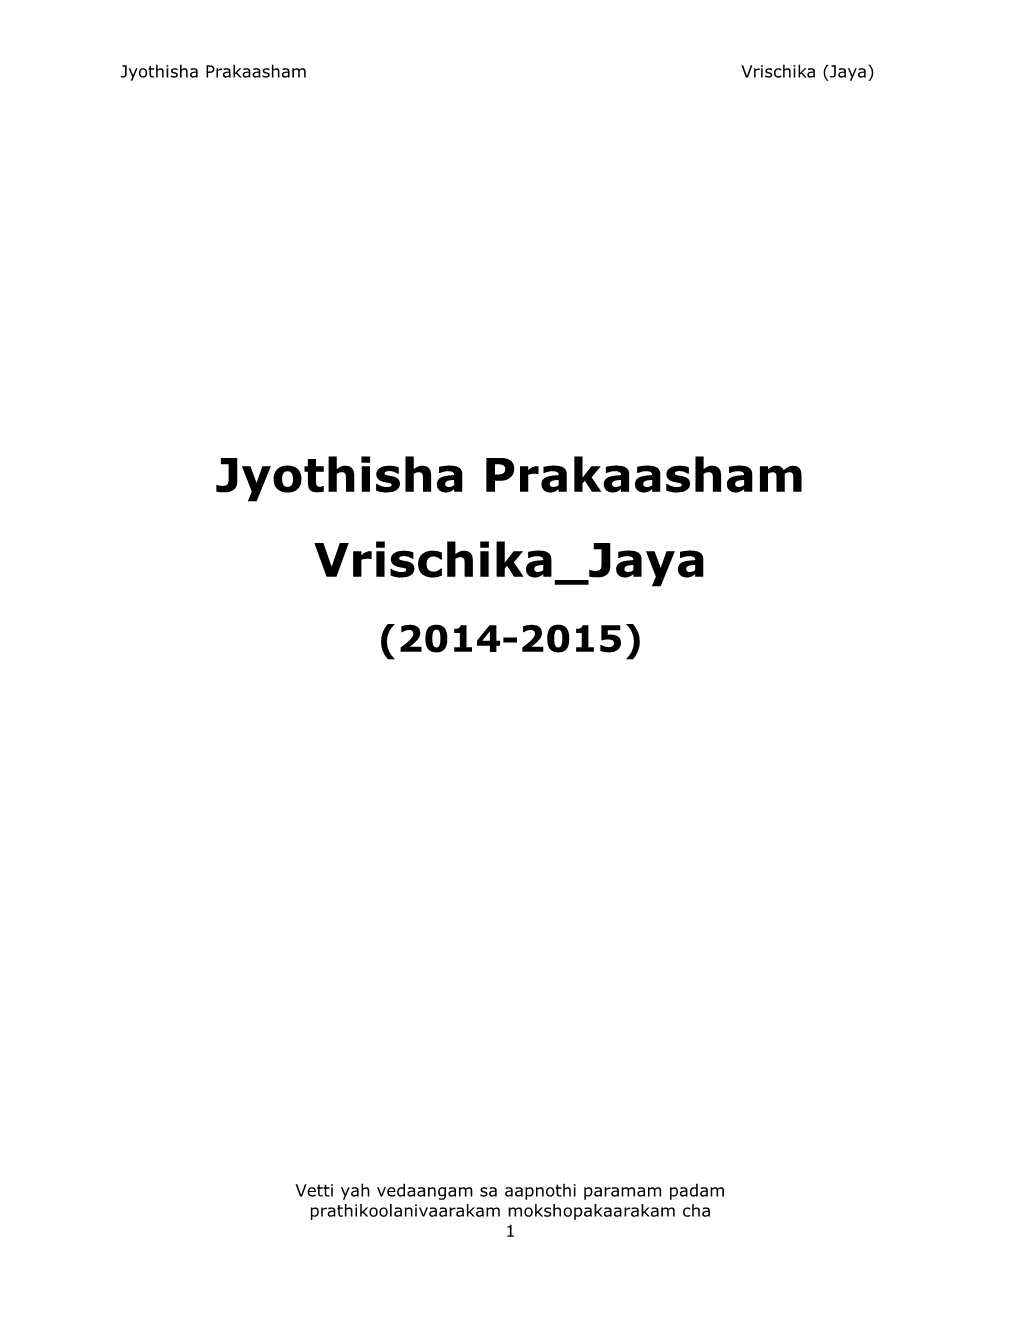 Jyothisha Prakaasham Vrischika Jaya